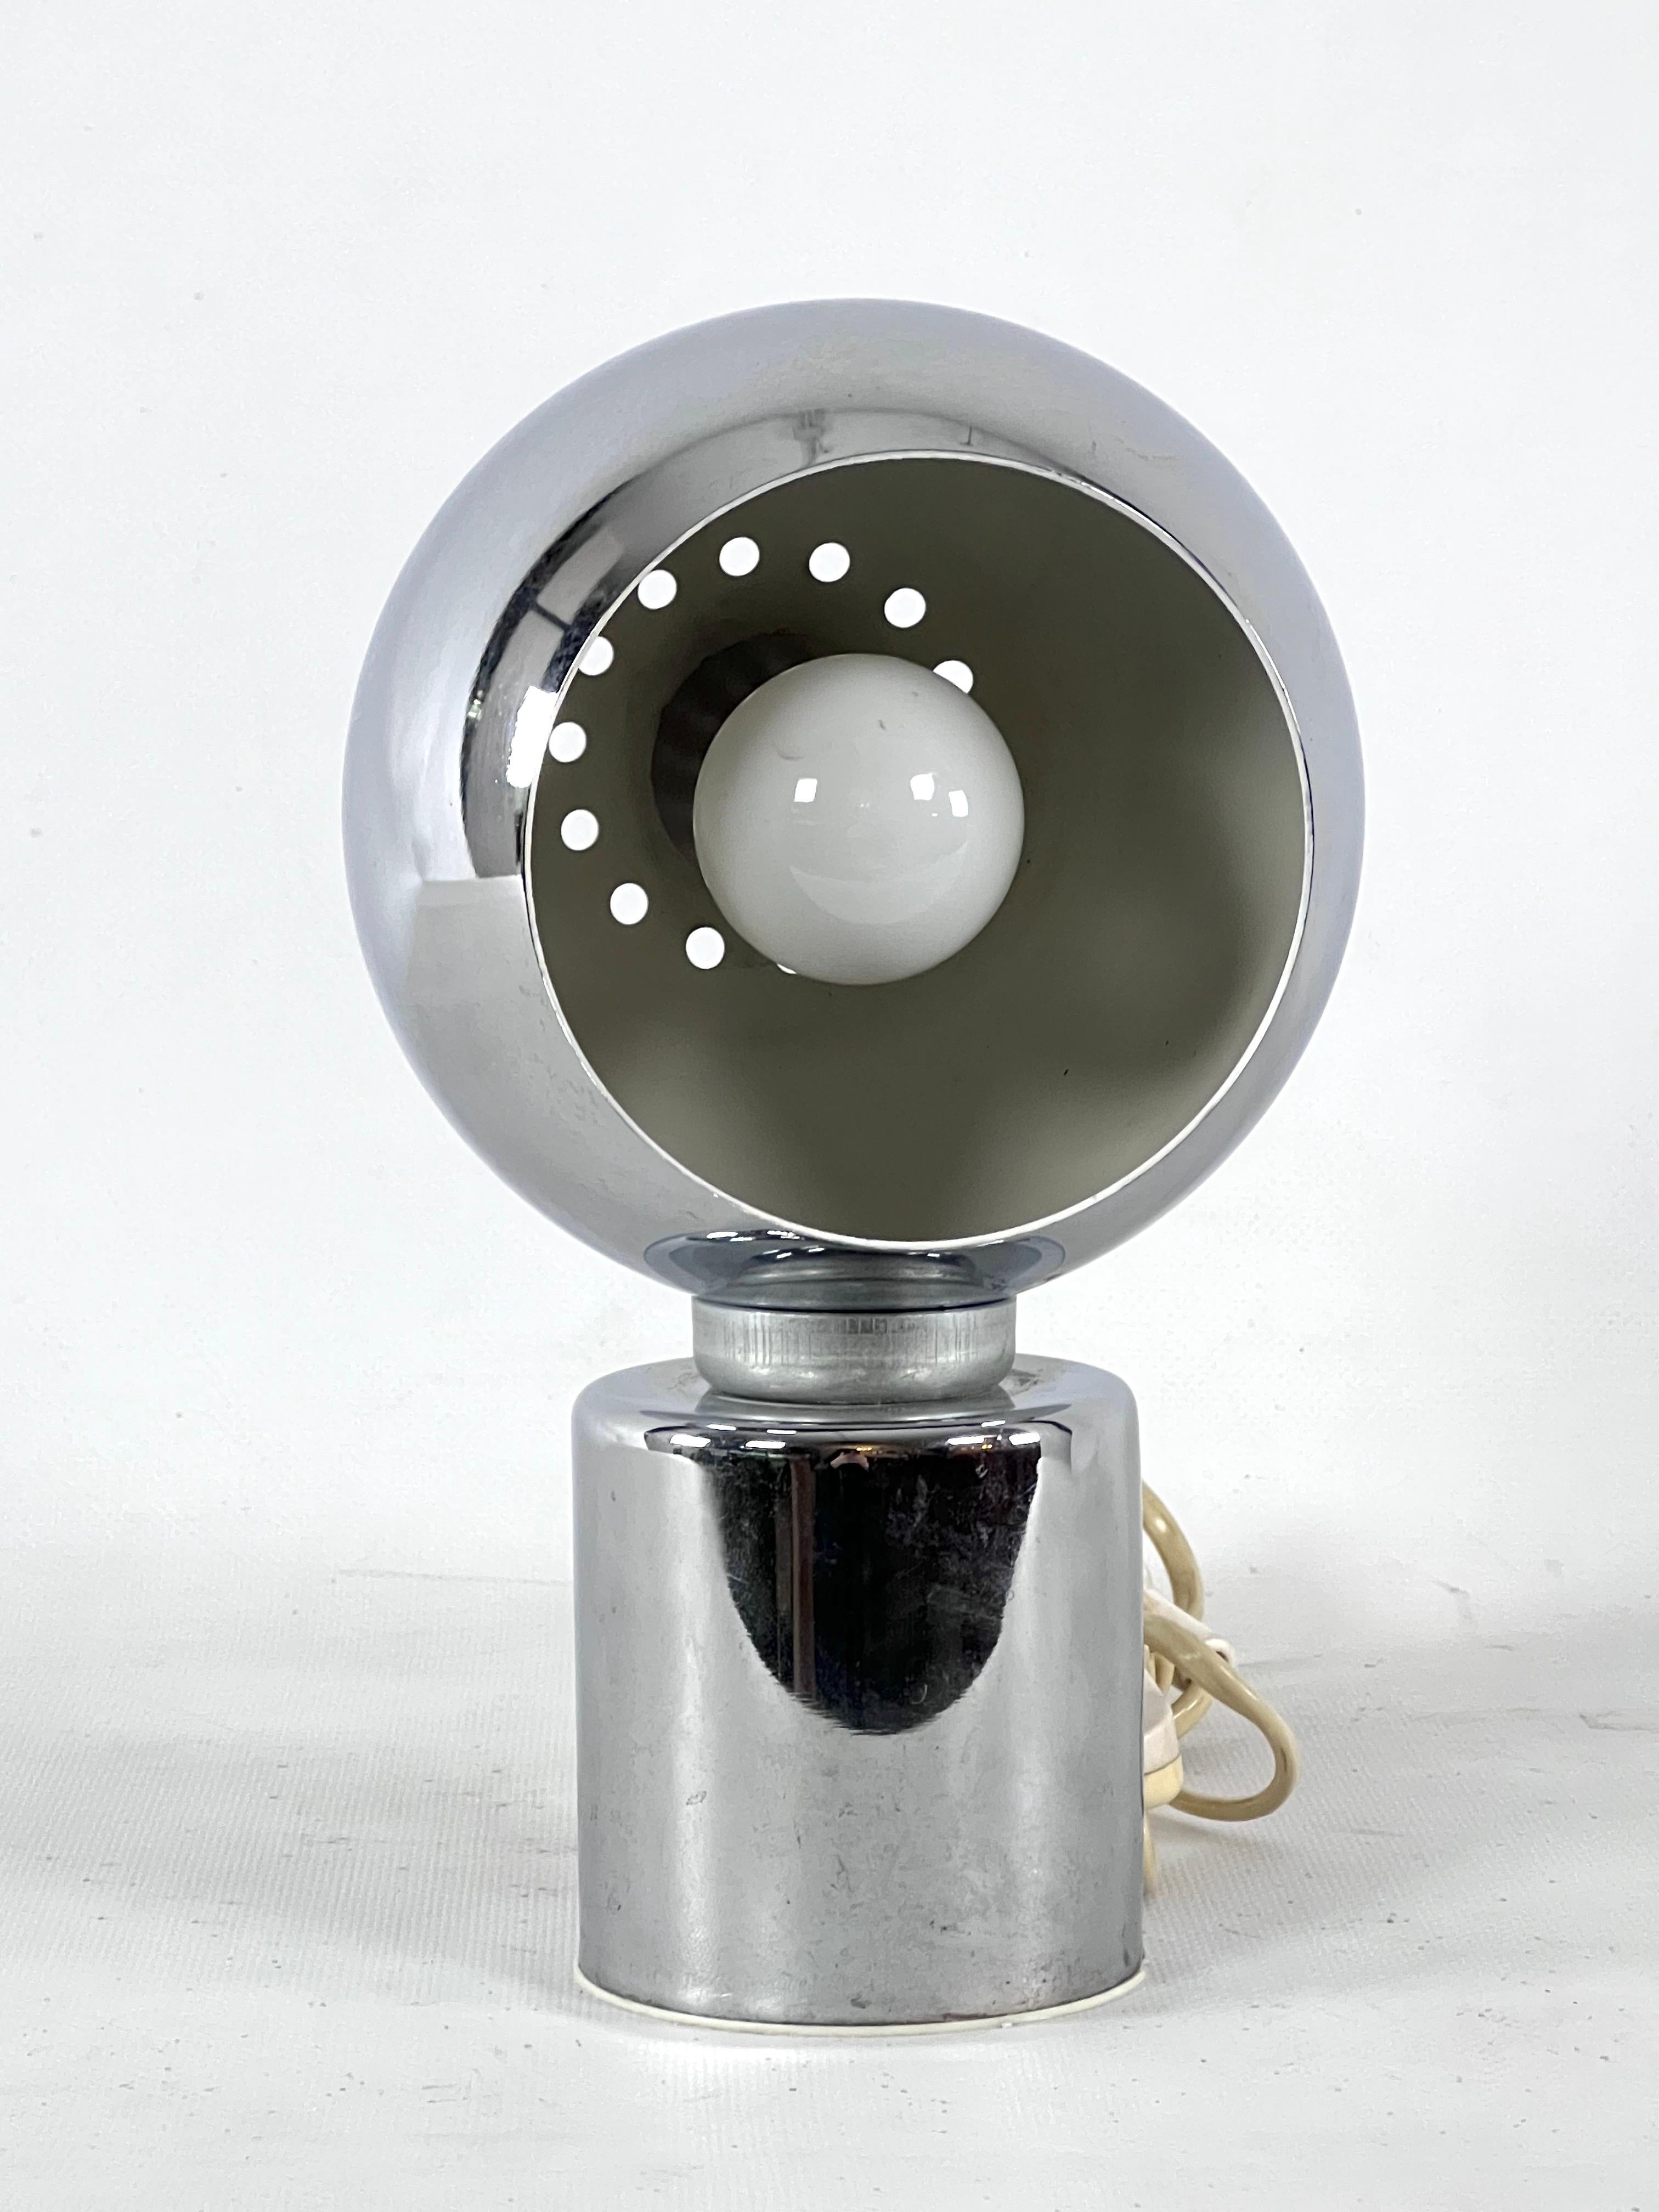 Bon état vintage avec des traces normales d'âge et d'utilisation pour cette lampe de table chromée produite par Reggiani dans les années 70. Labellisé. La flèche chromée est reliée à un support aimanté. Fonctionne entièrement avec la norme